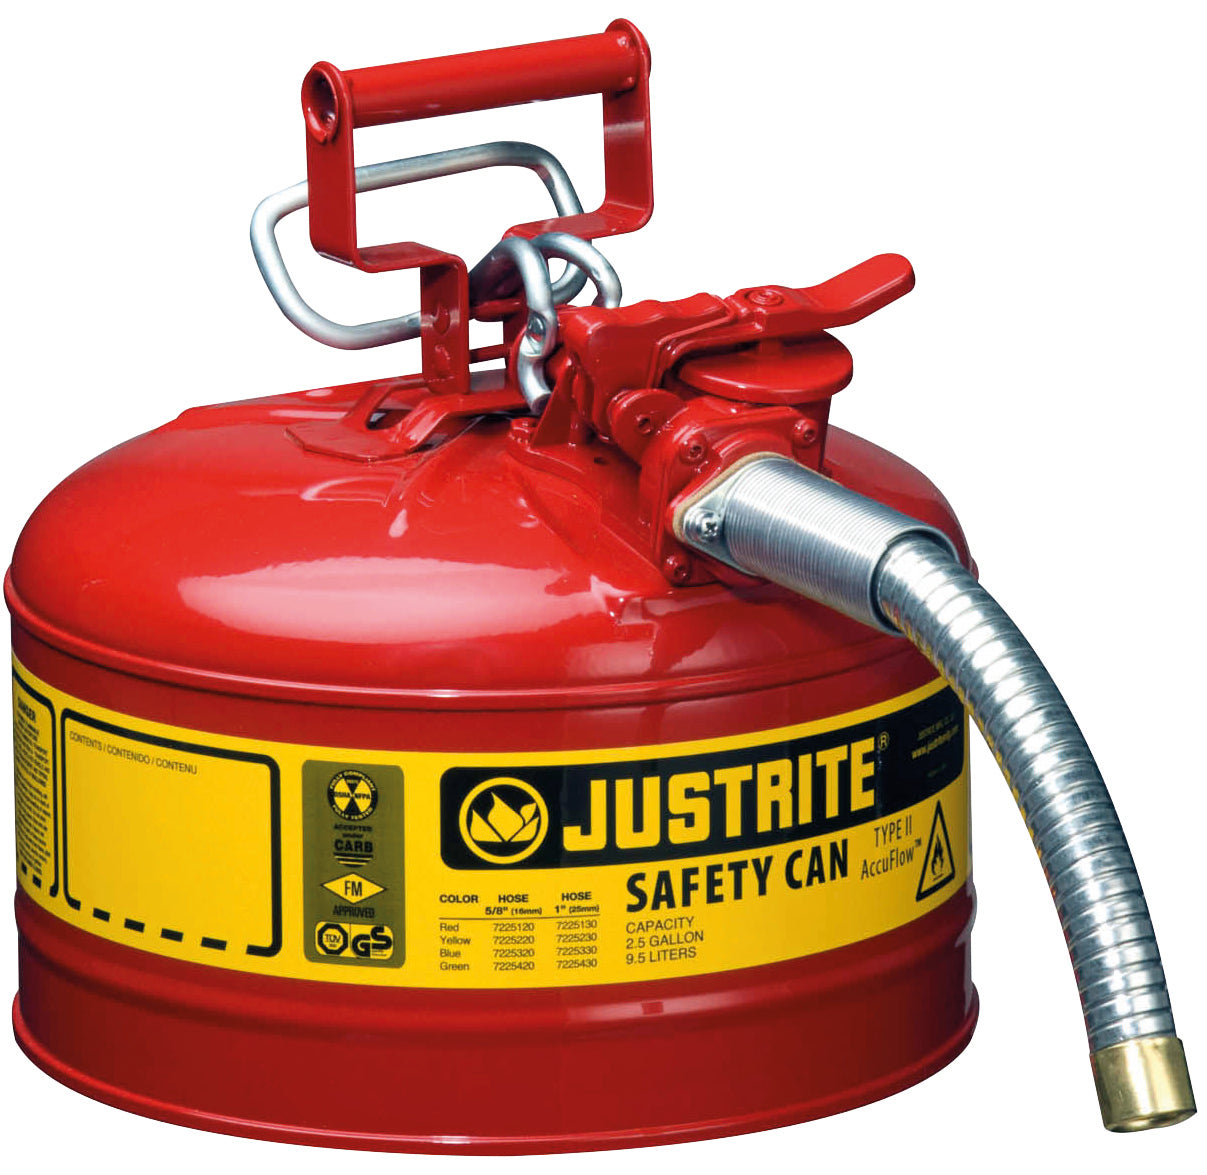 Sicherheitsbehälter Stahl pulverbeschichtet Rot, Inhalt: 9,5 Liter, Schlauch, Stahlblech pulverbeschichtet glatt